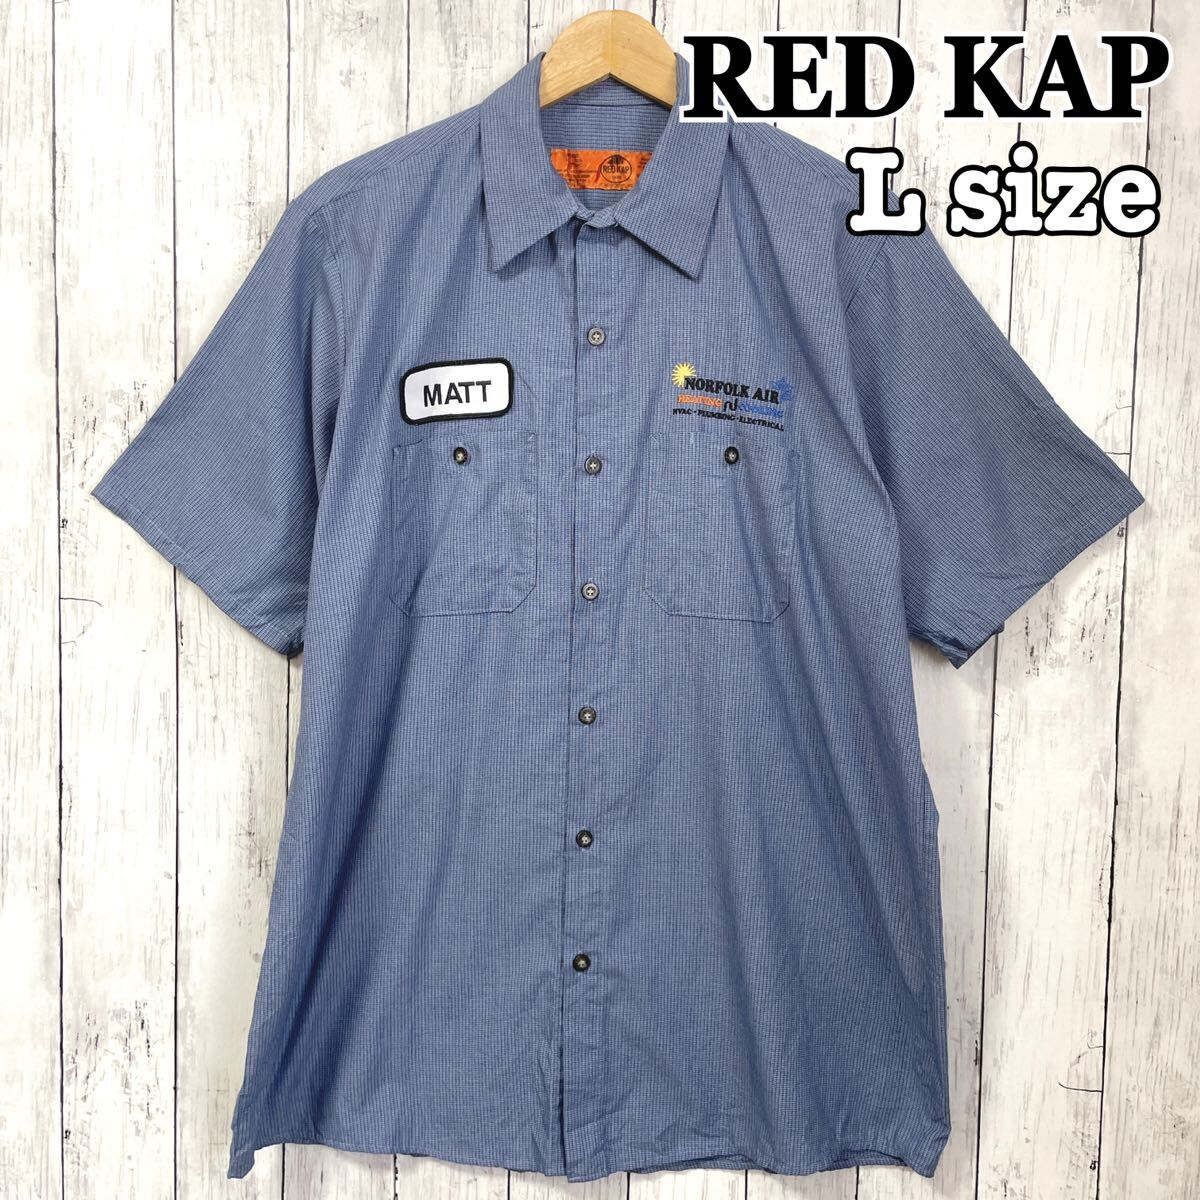 RED KAP レッドキャップ ワークシャツ 半袖 ワッペン 刺繍 XL 古着 輸入 海外古着 ビッグシルエットの画像1